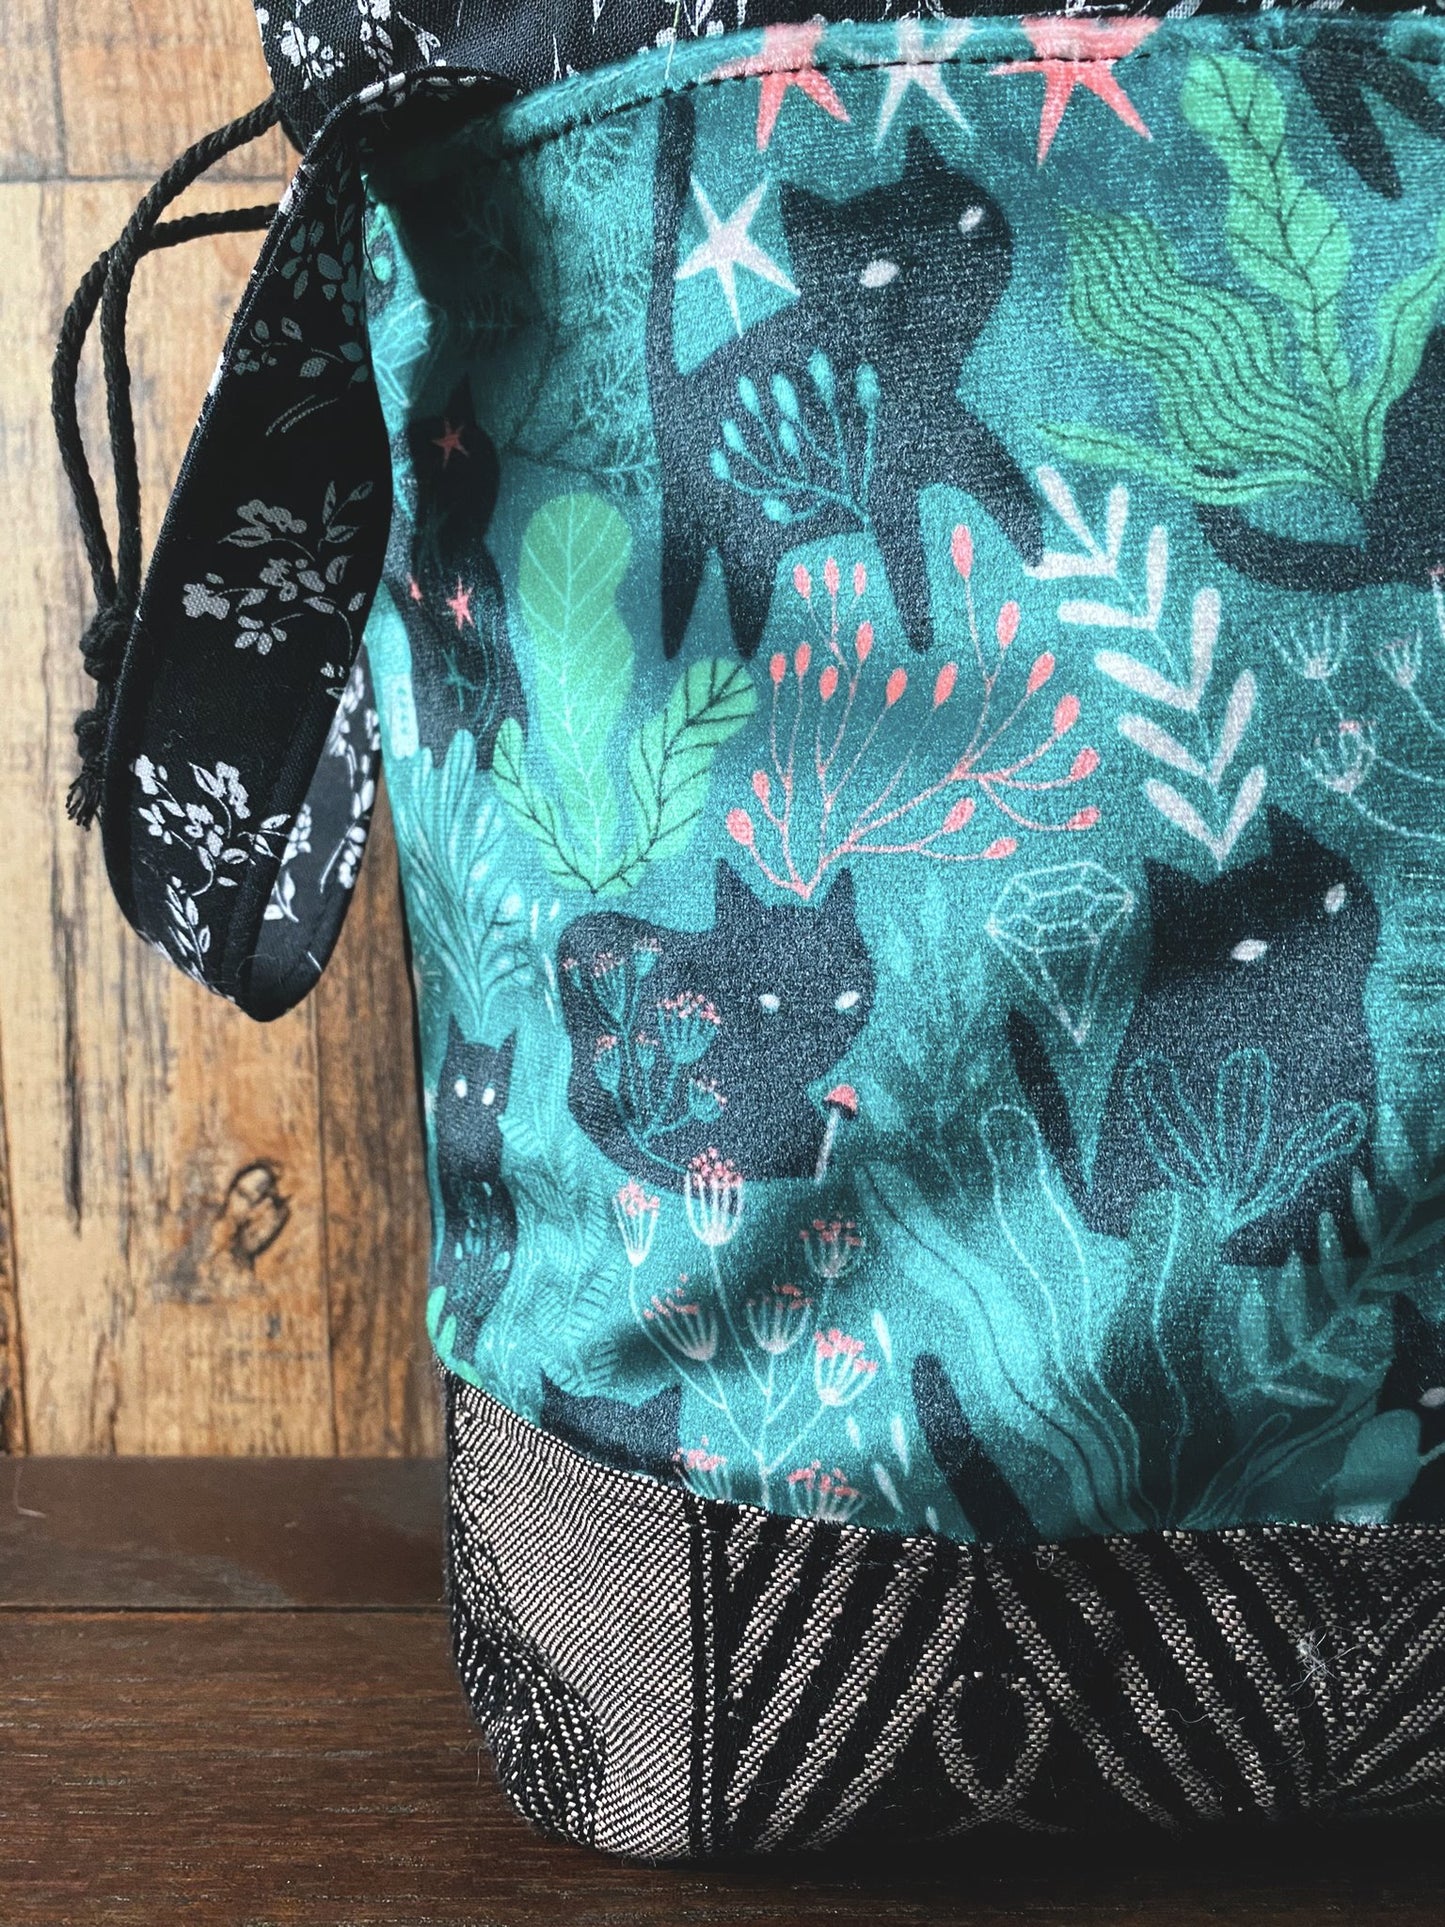 Moonlit Cats Drawstring Project Bag